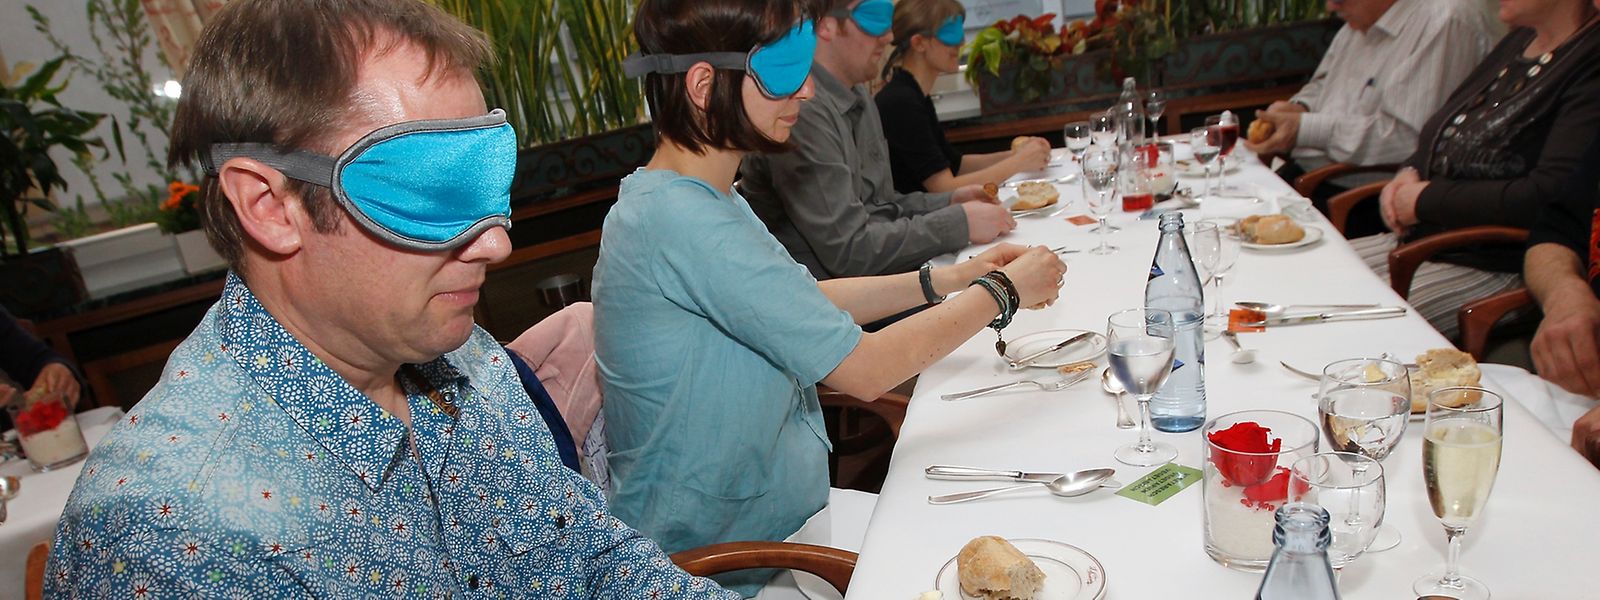  Wie fühlt es sich an, blind zu sein? Das soll den Teilnehmern beim „Essen im Dunkeln“ nähergebracht werden, das dieses Jahr gleich viermal stattfindet.